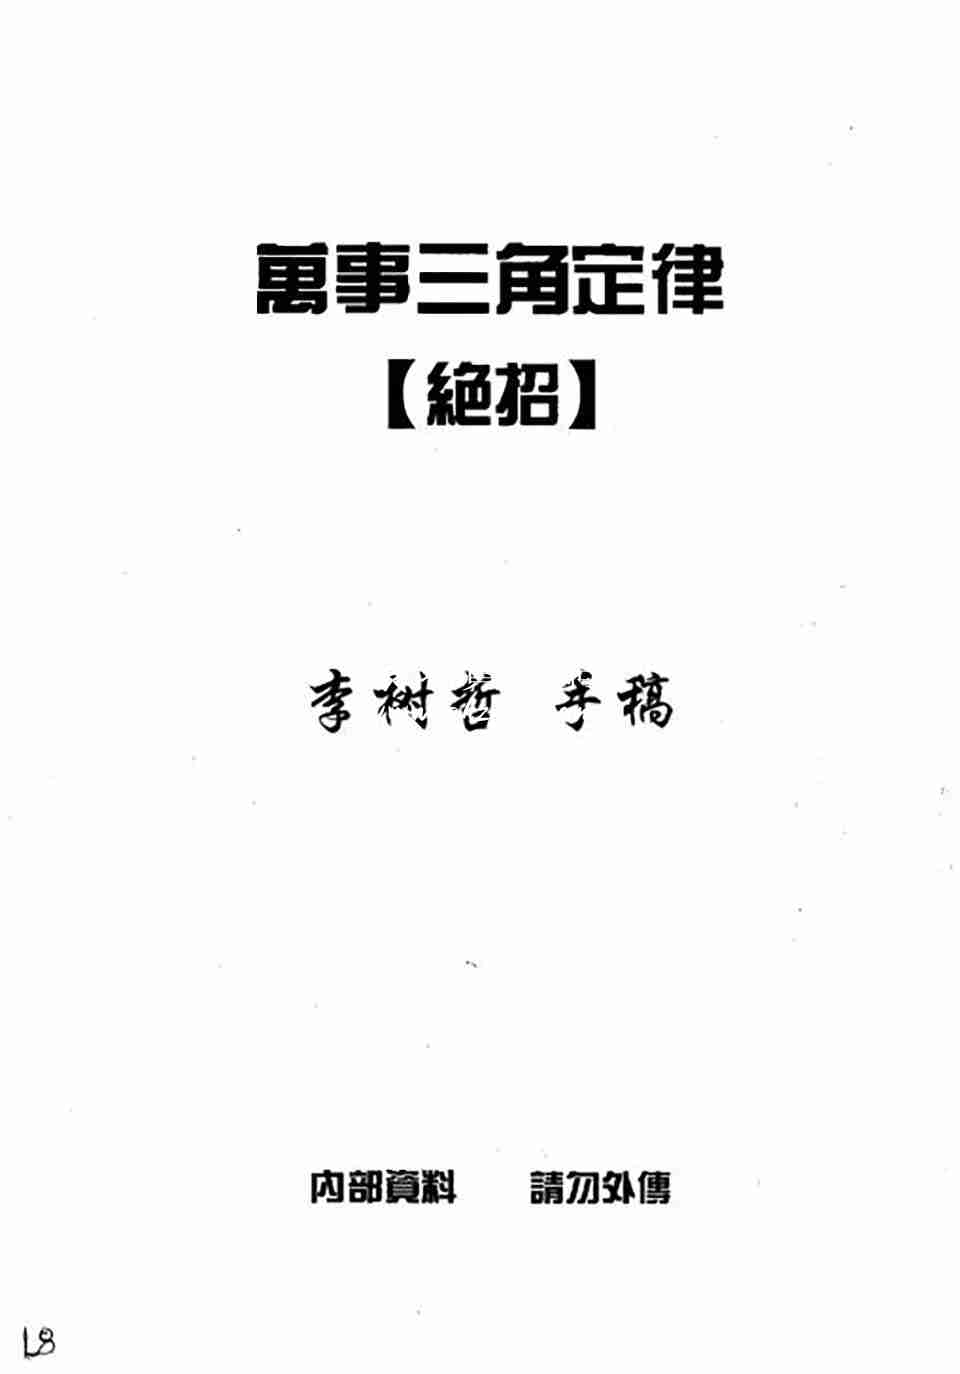 蘇方行萬事三角定律絕招整理版19頁.pdf